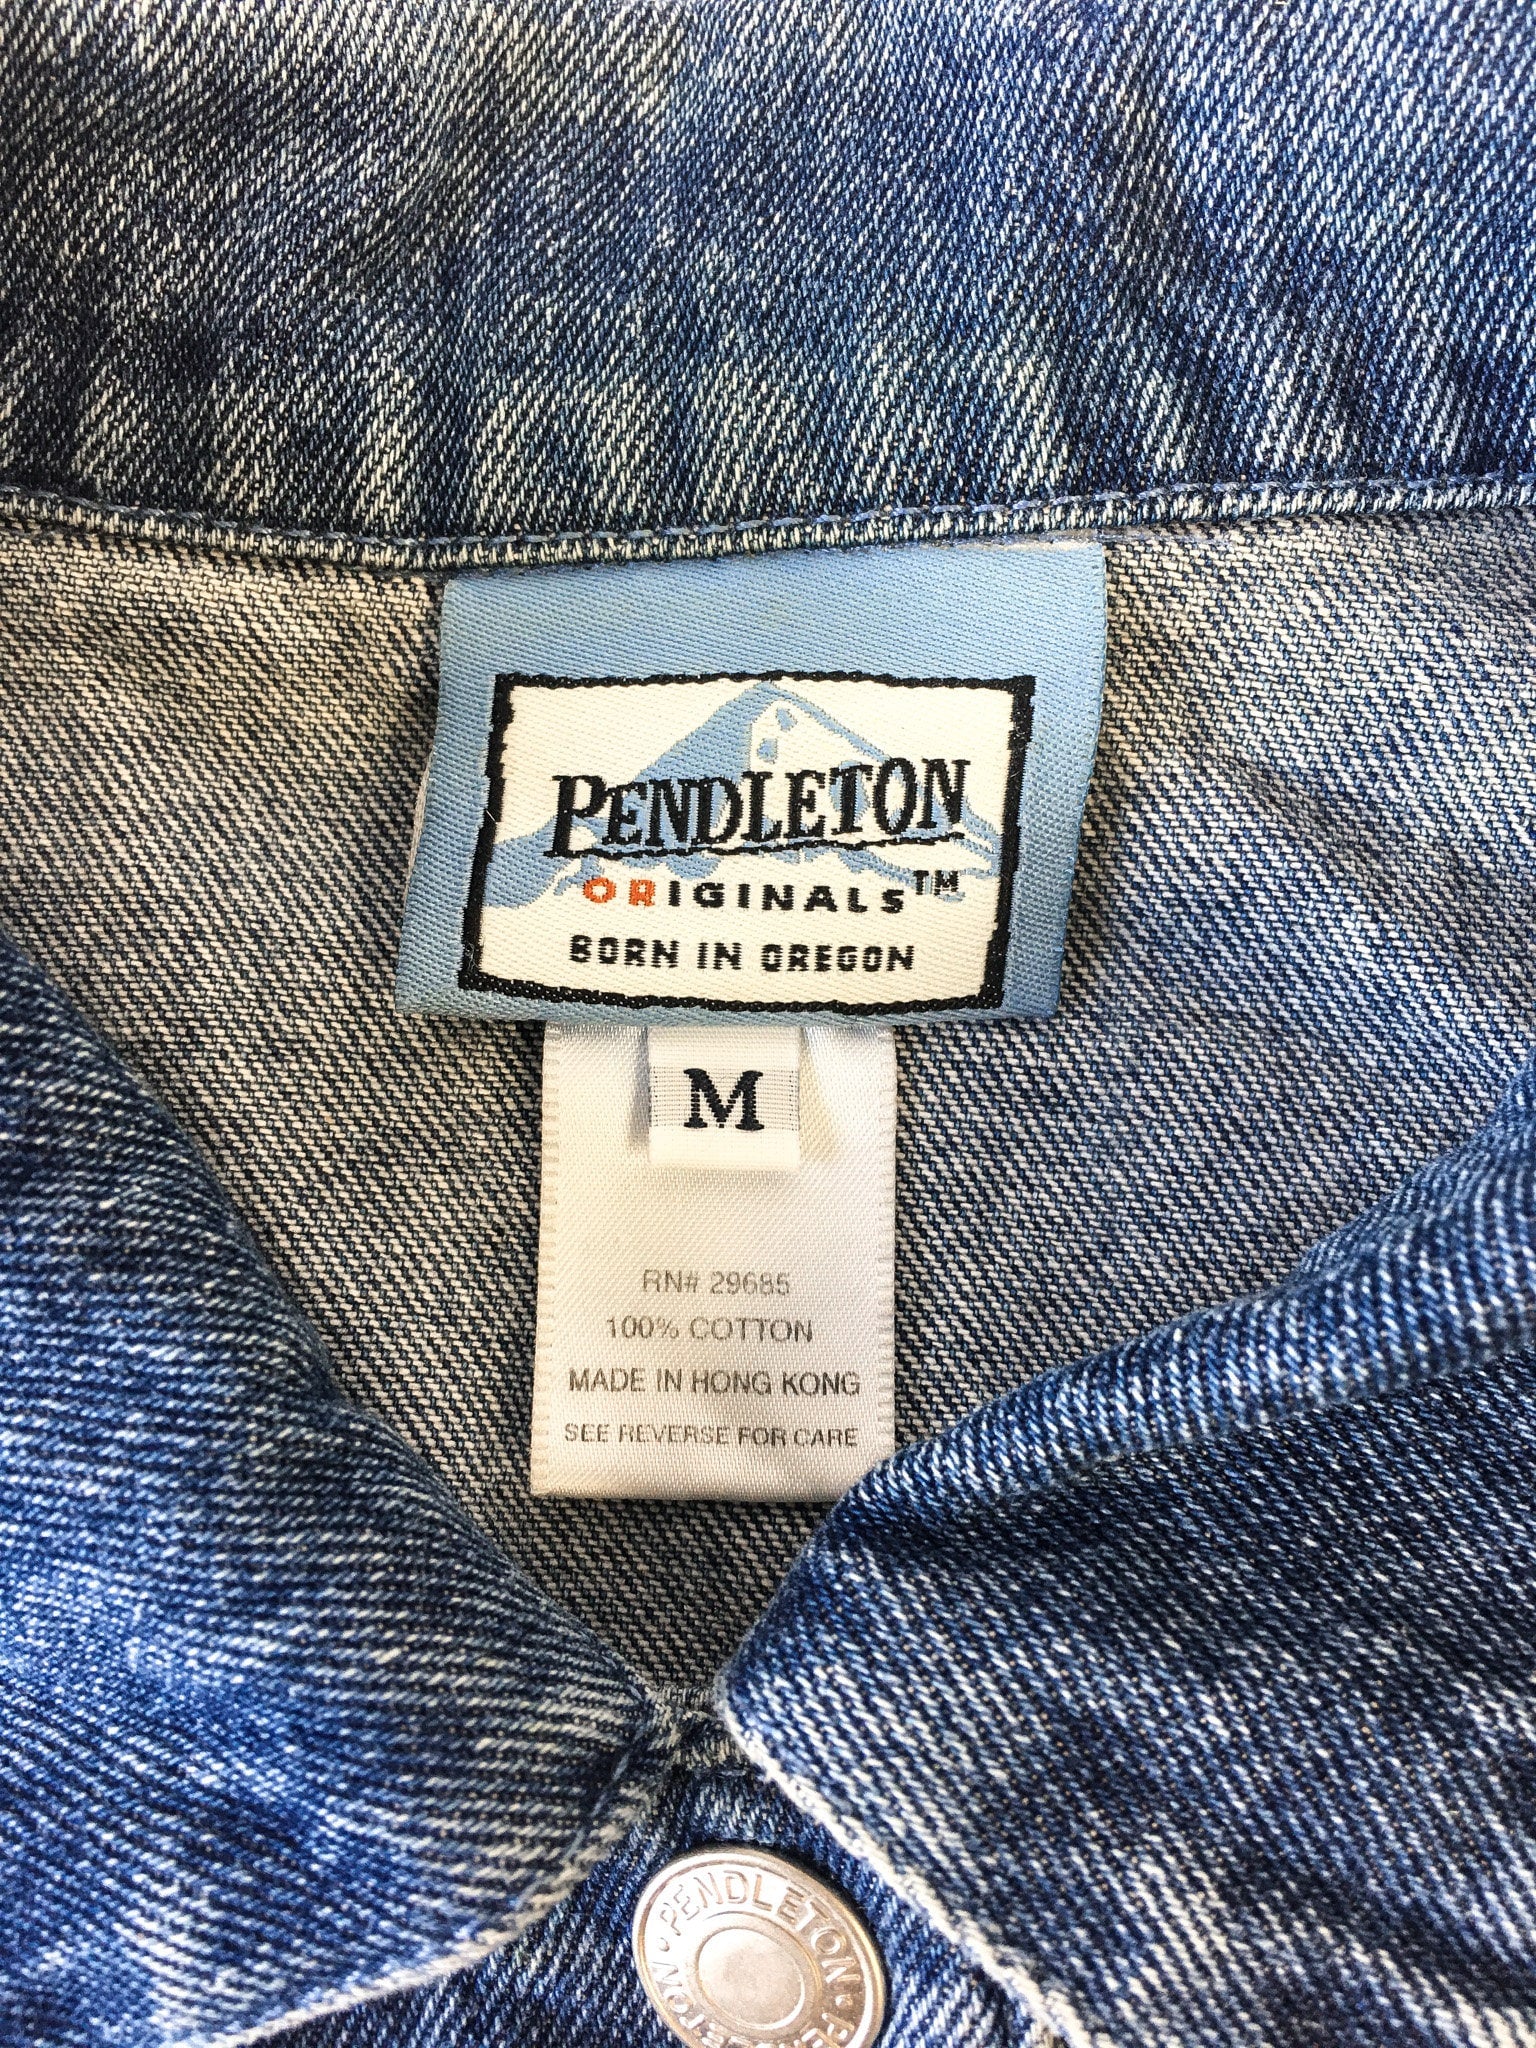 Vintage 90s Pendleton Medium Wash Denim Vest, Women's Sz. M, 90s Jean Jacket Vest